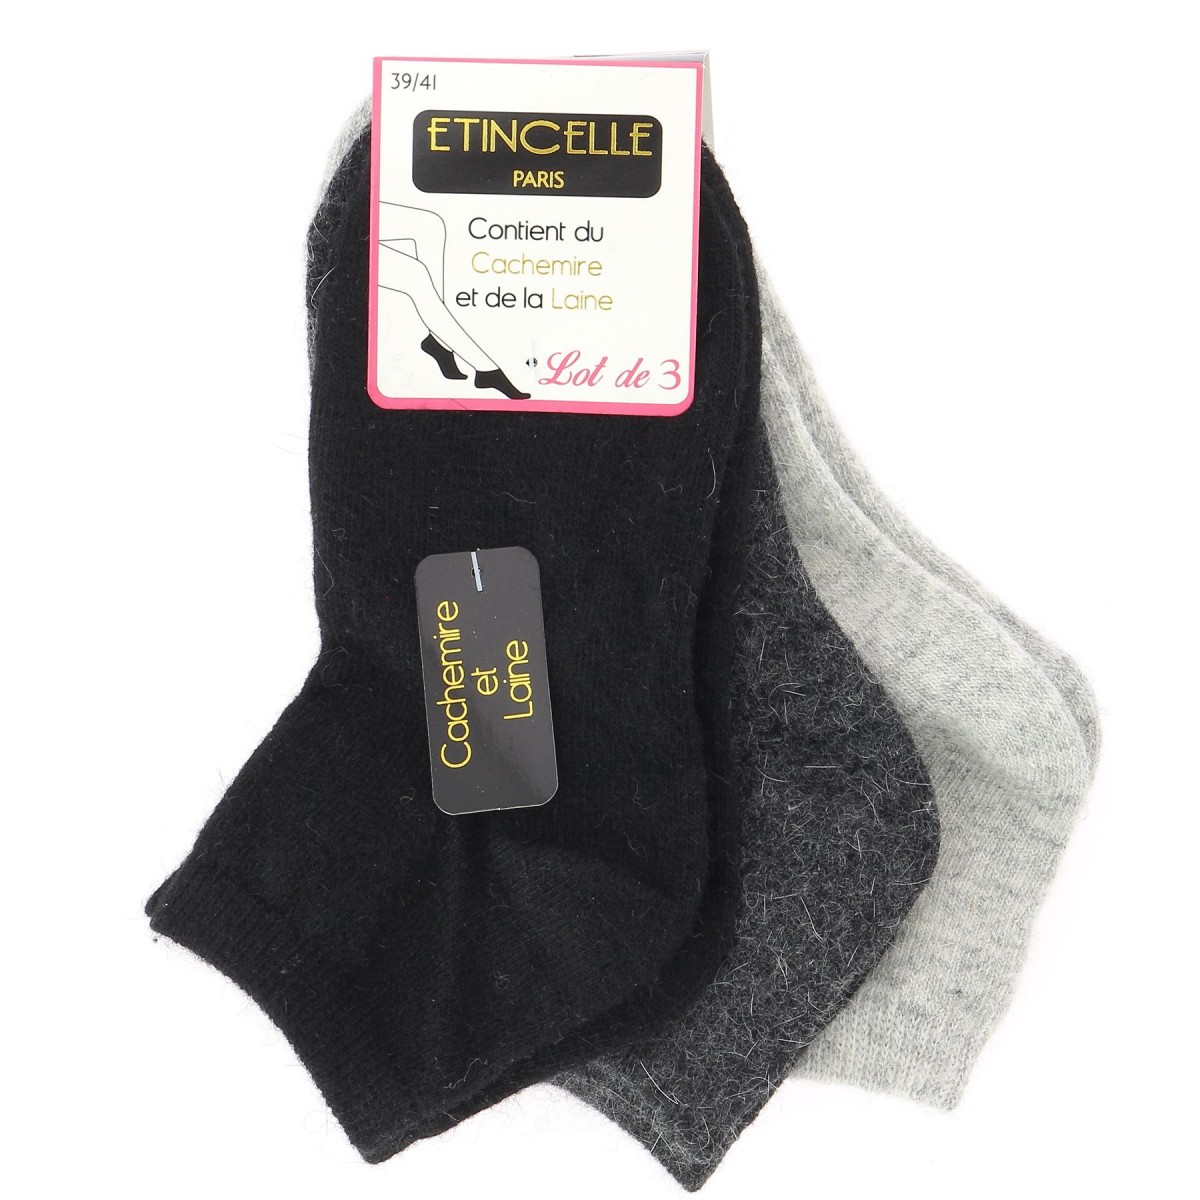 Socquettes femme cachemire, laine pack 3 - Matière-noble 9,99€